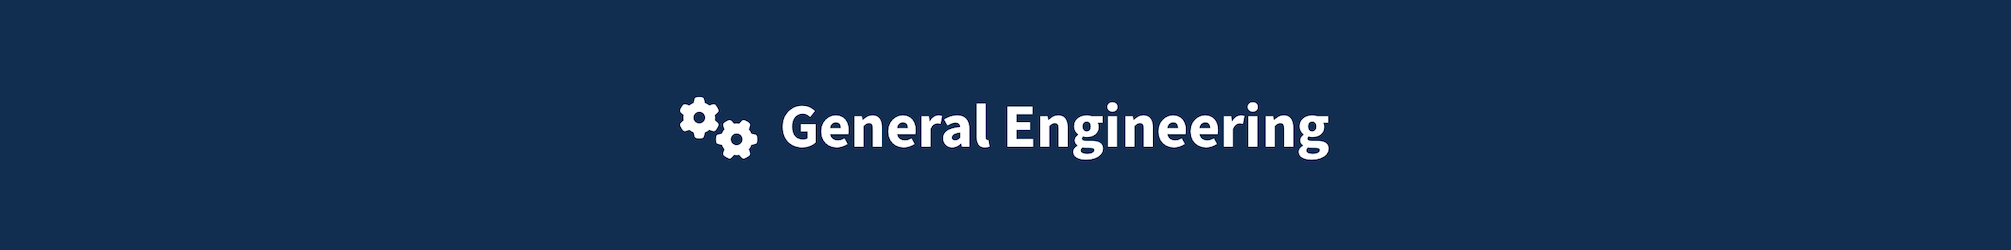 General engineering